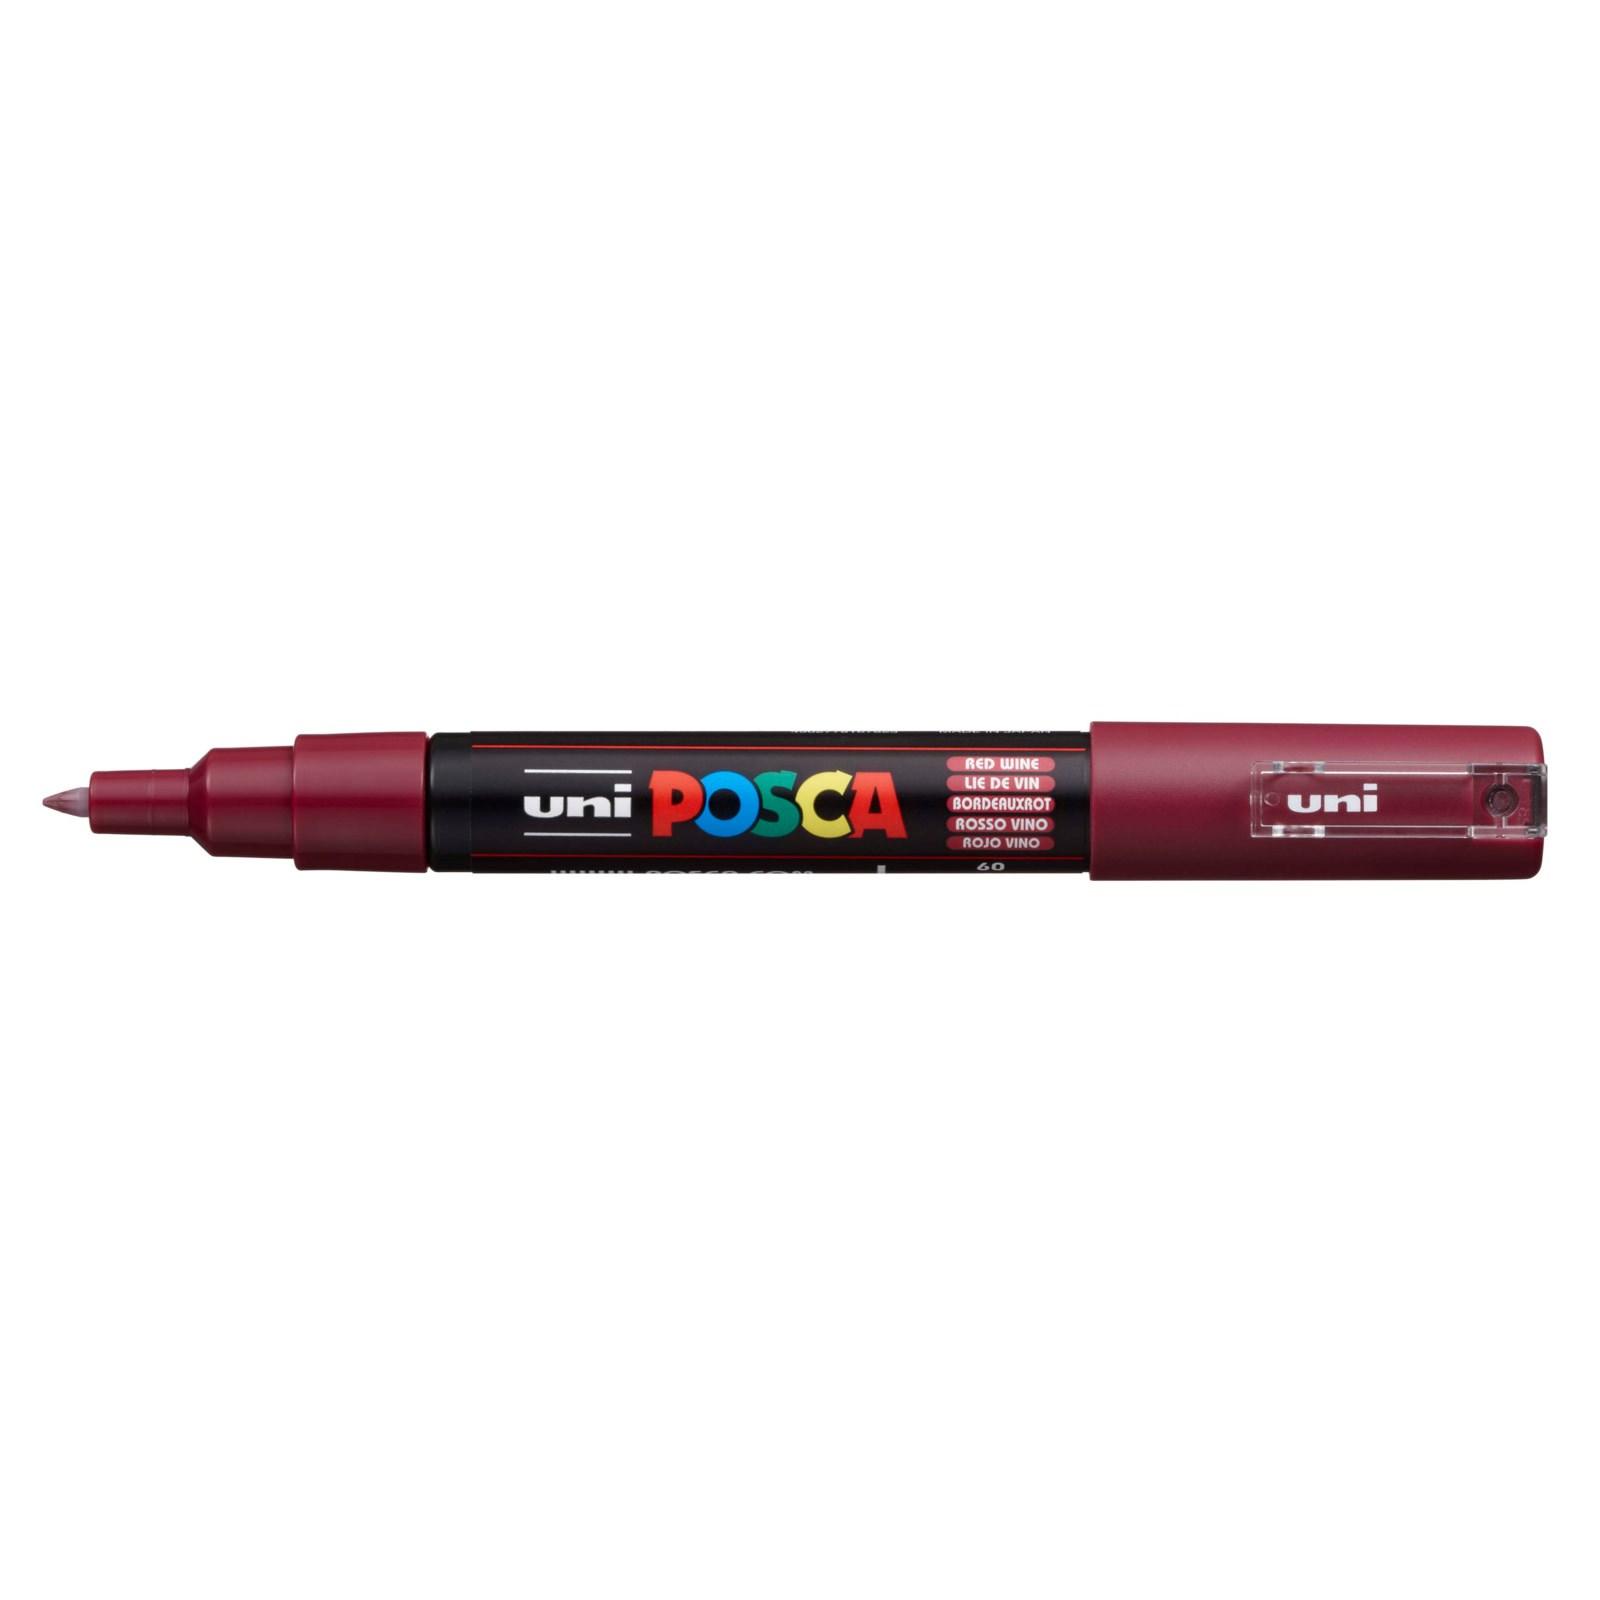 Posca POSCA Paint Markers-1M XFINE RED WINE